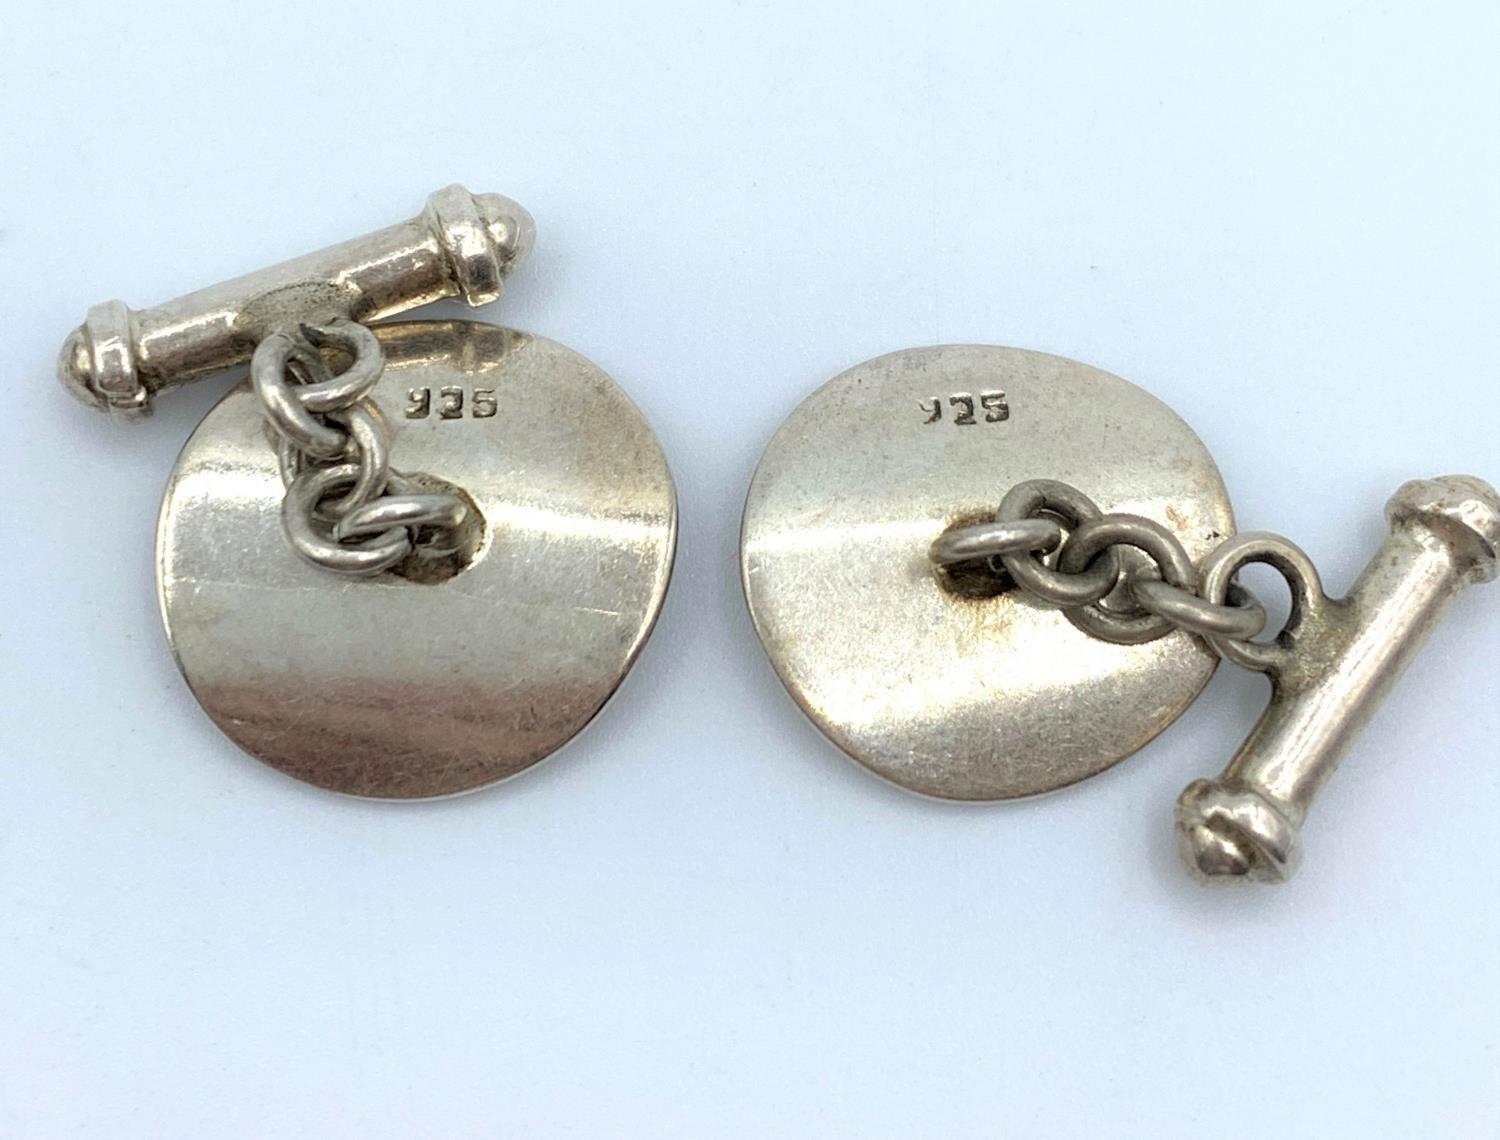 Pair of Vintage Silver Cufflinks, weight 9g